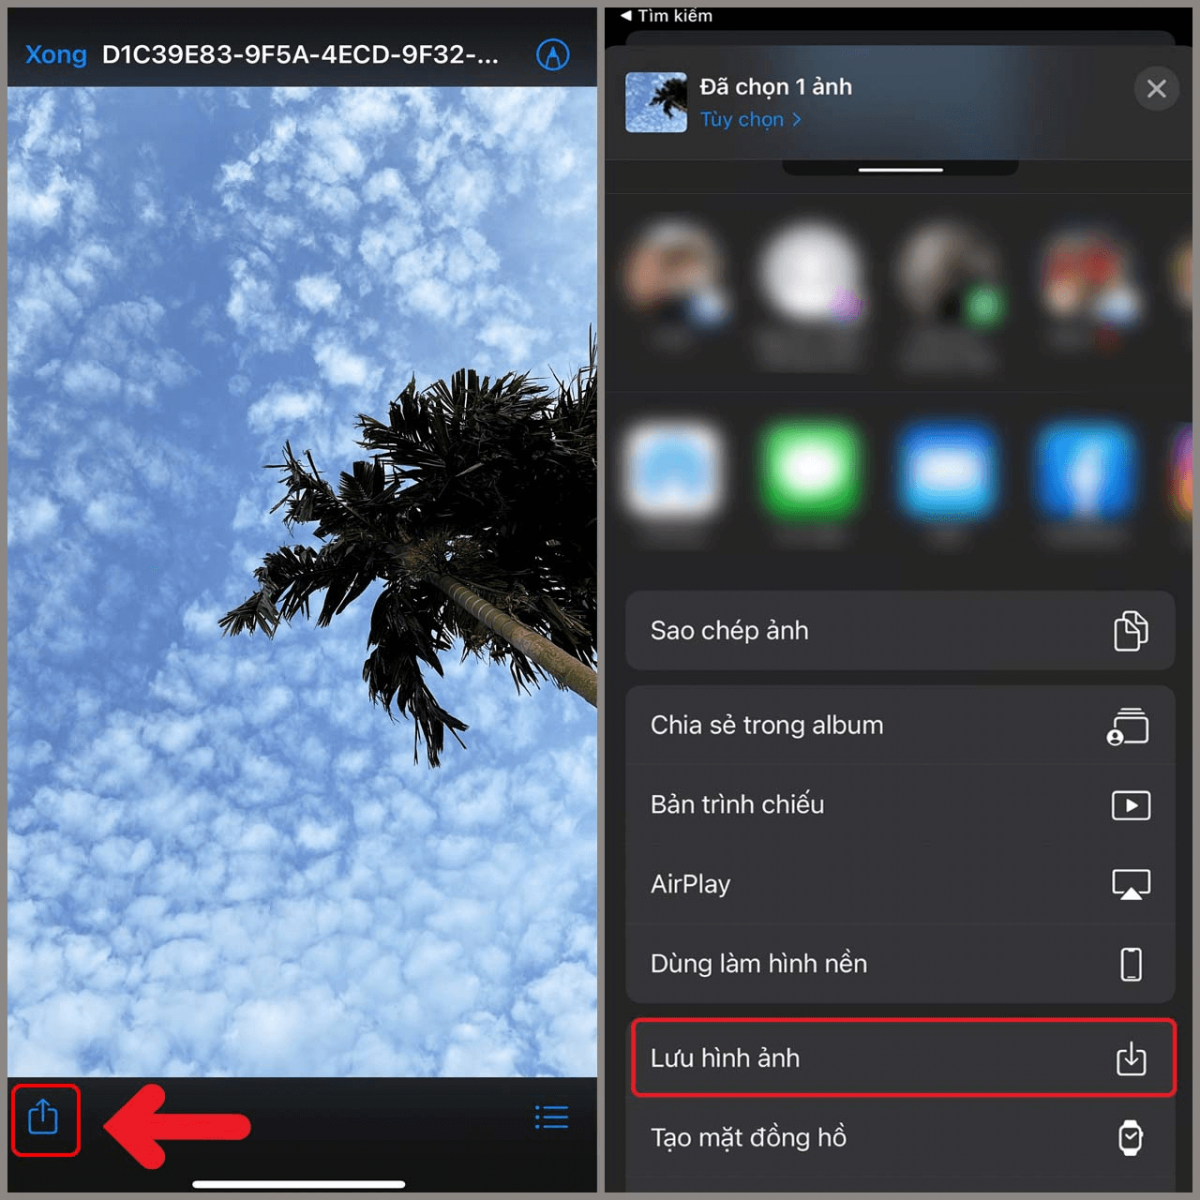 Nhấn vào nút “Chia sẻ” ở góc trái bên dưới màn hình và chọn “Lưu hình ảnh” để tải ảnh từ iCloud về iPhone mới.